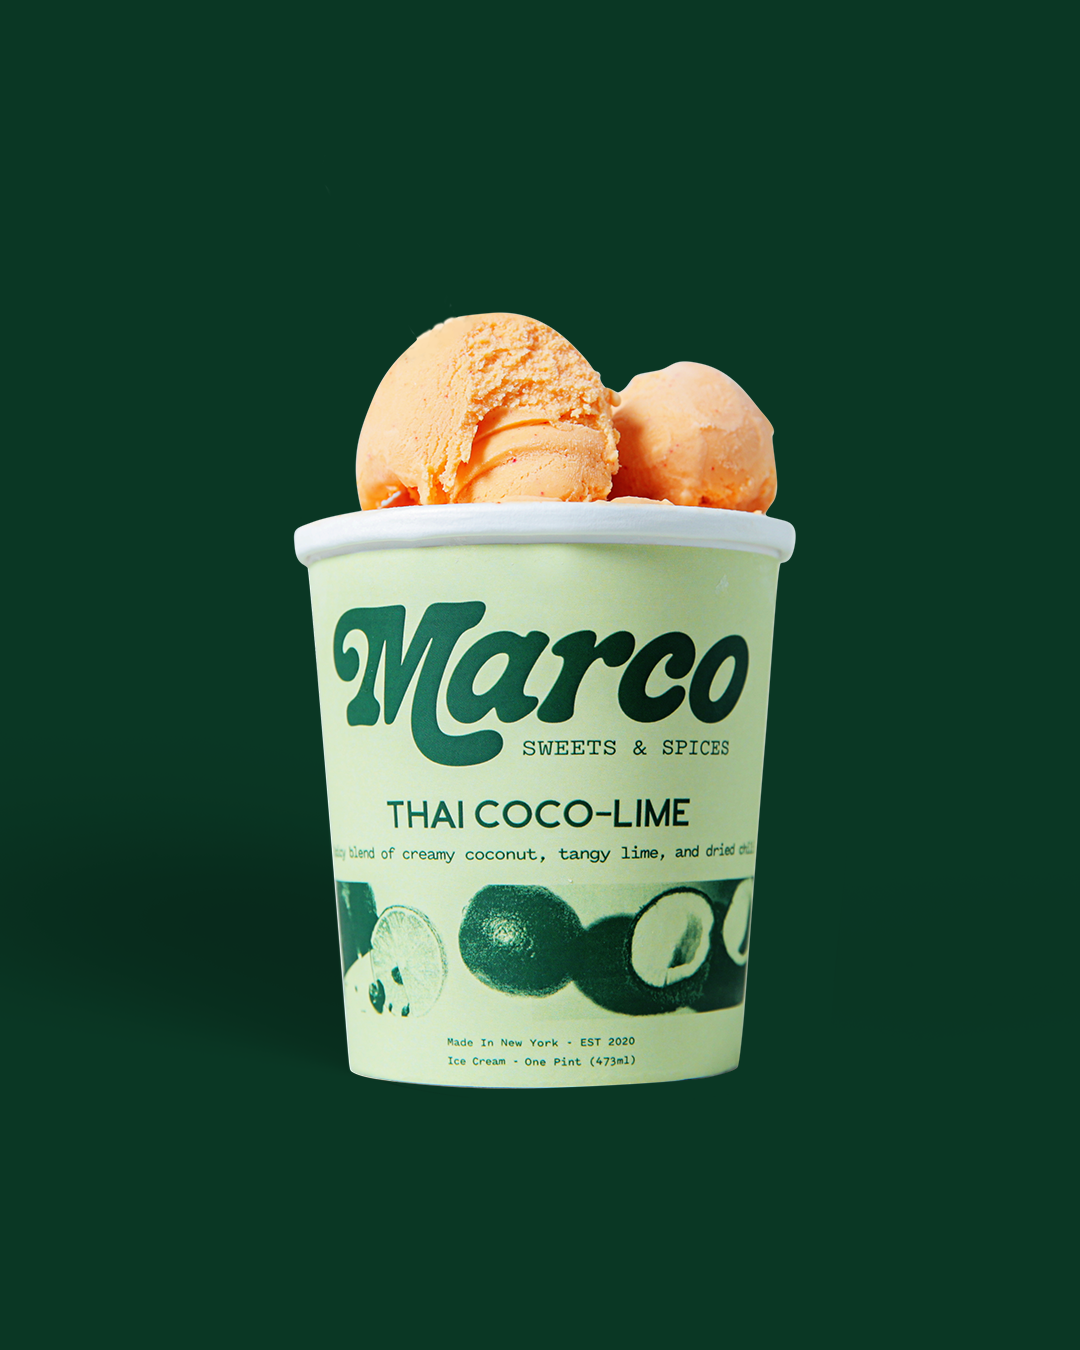 Thai Coco-Lime